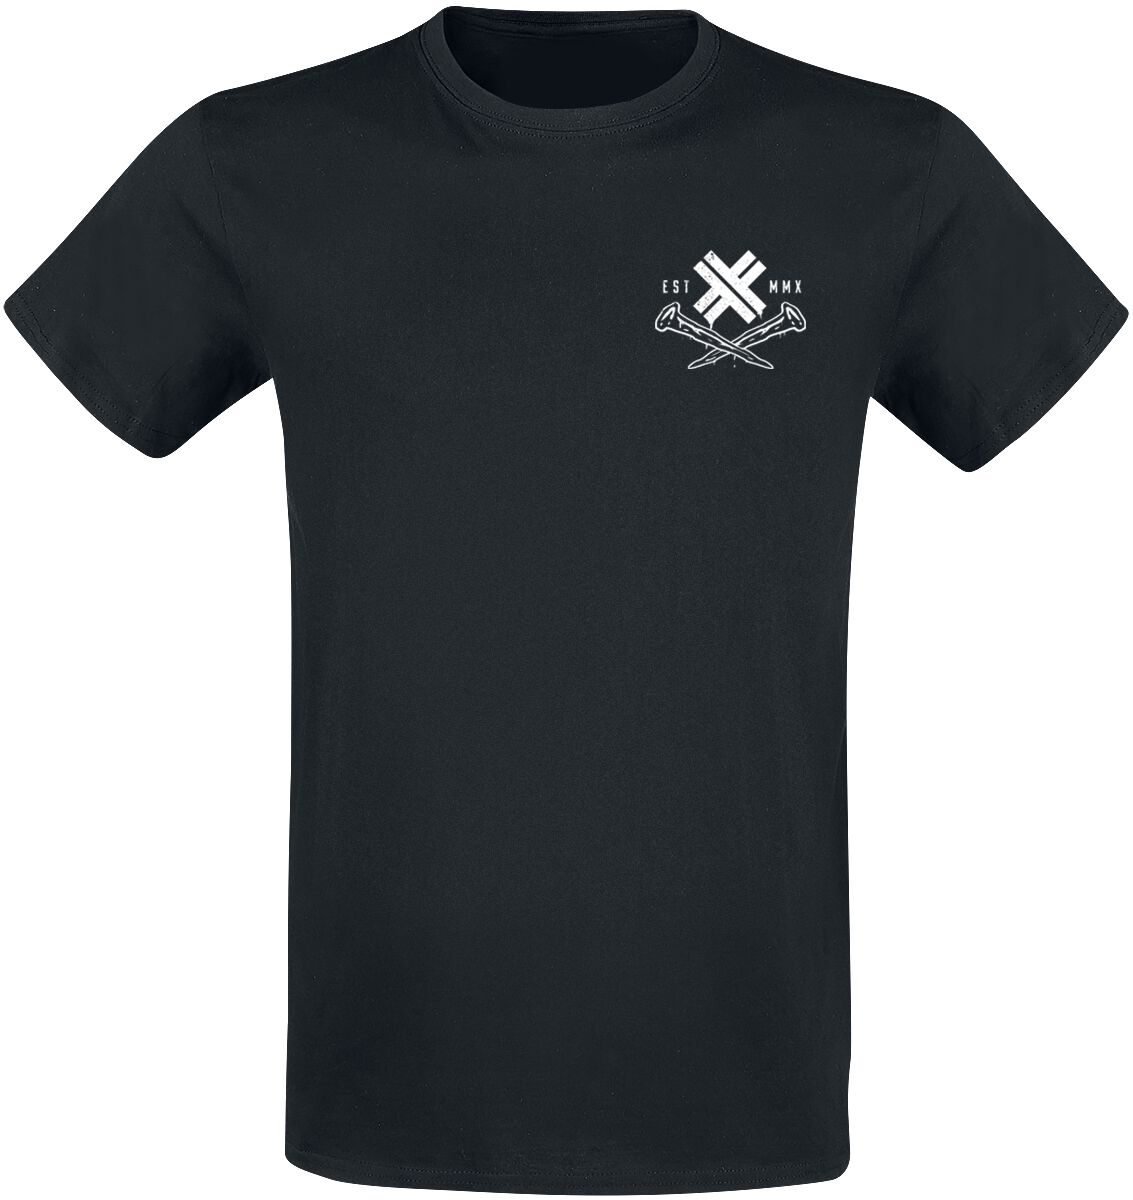 Electric Callboy T-Shirt - Dark Horse - S bis 3XL - für Männer - Größe S - schwarz  - Lizenziertes Merchandise!